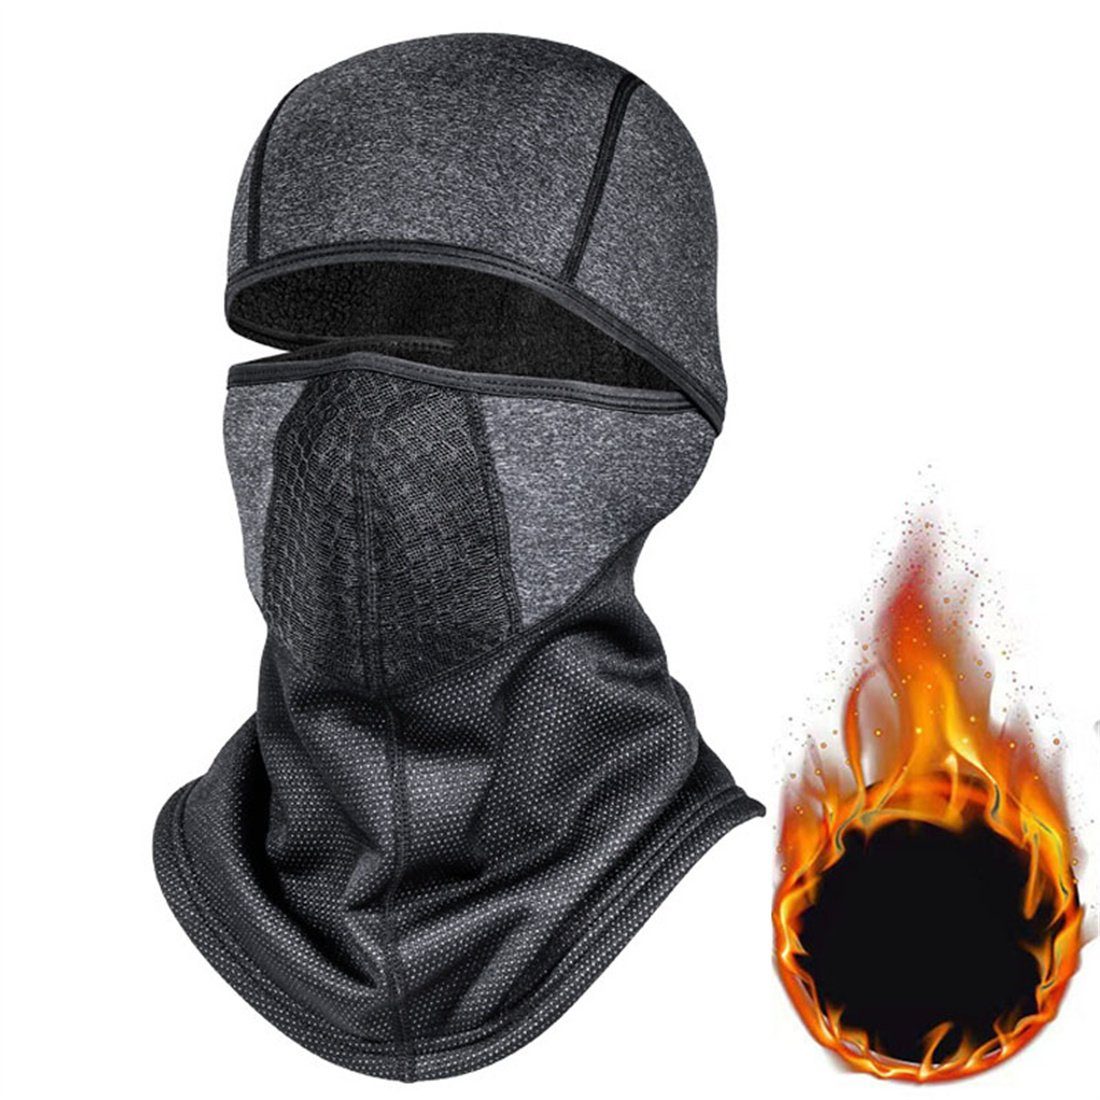 DÖRÖY Sturmhaube Winter-Ski-Maske, Outdoor-Radfahren Halsschutz Kopfbedeckung, unisex dunkelgrau